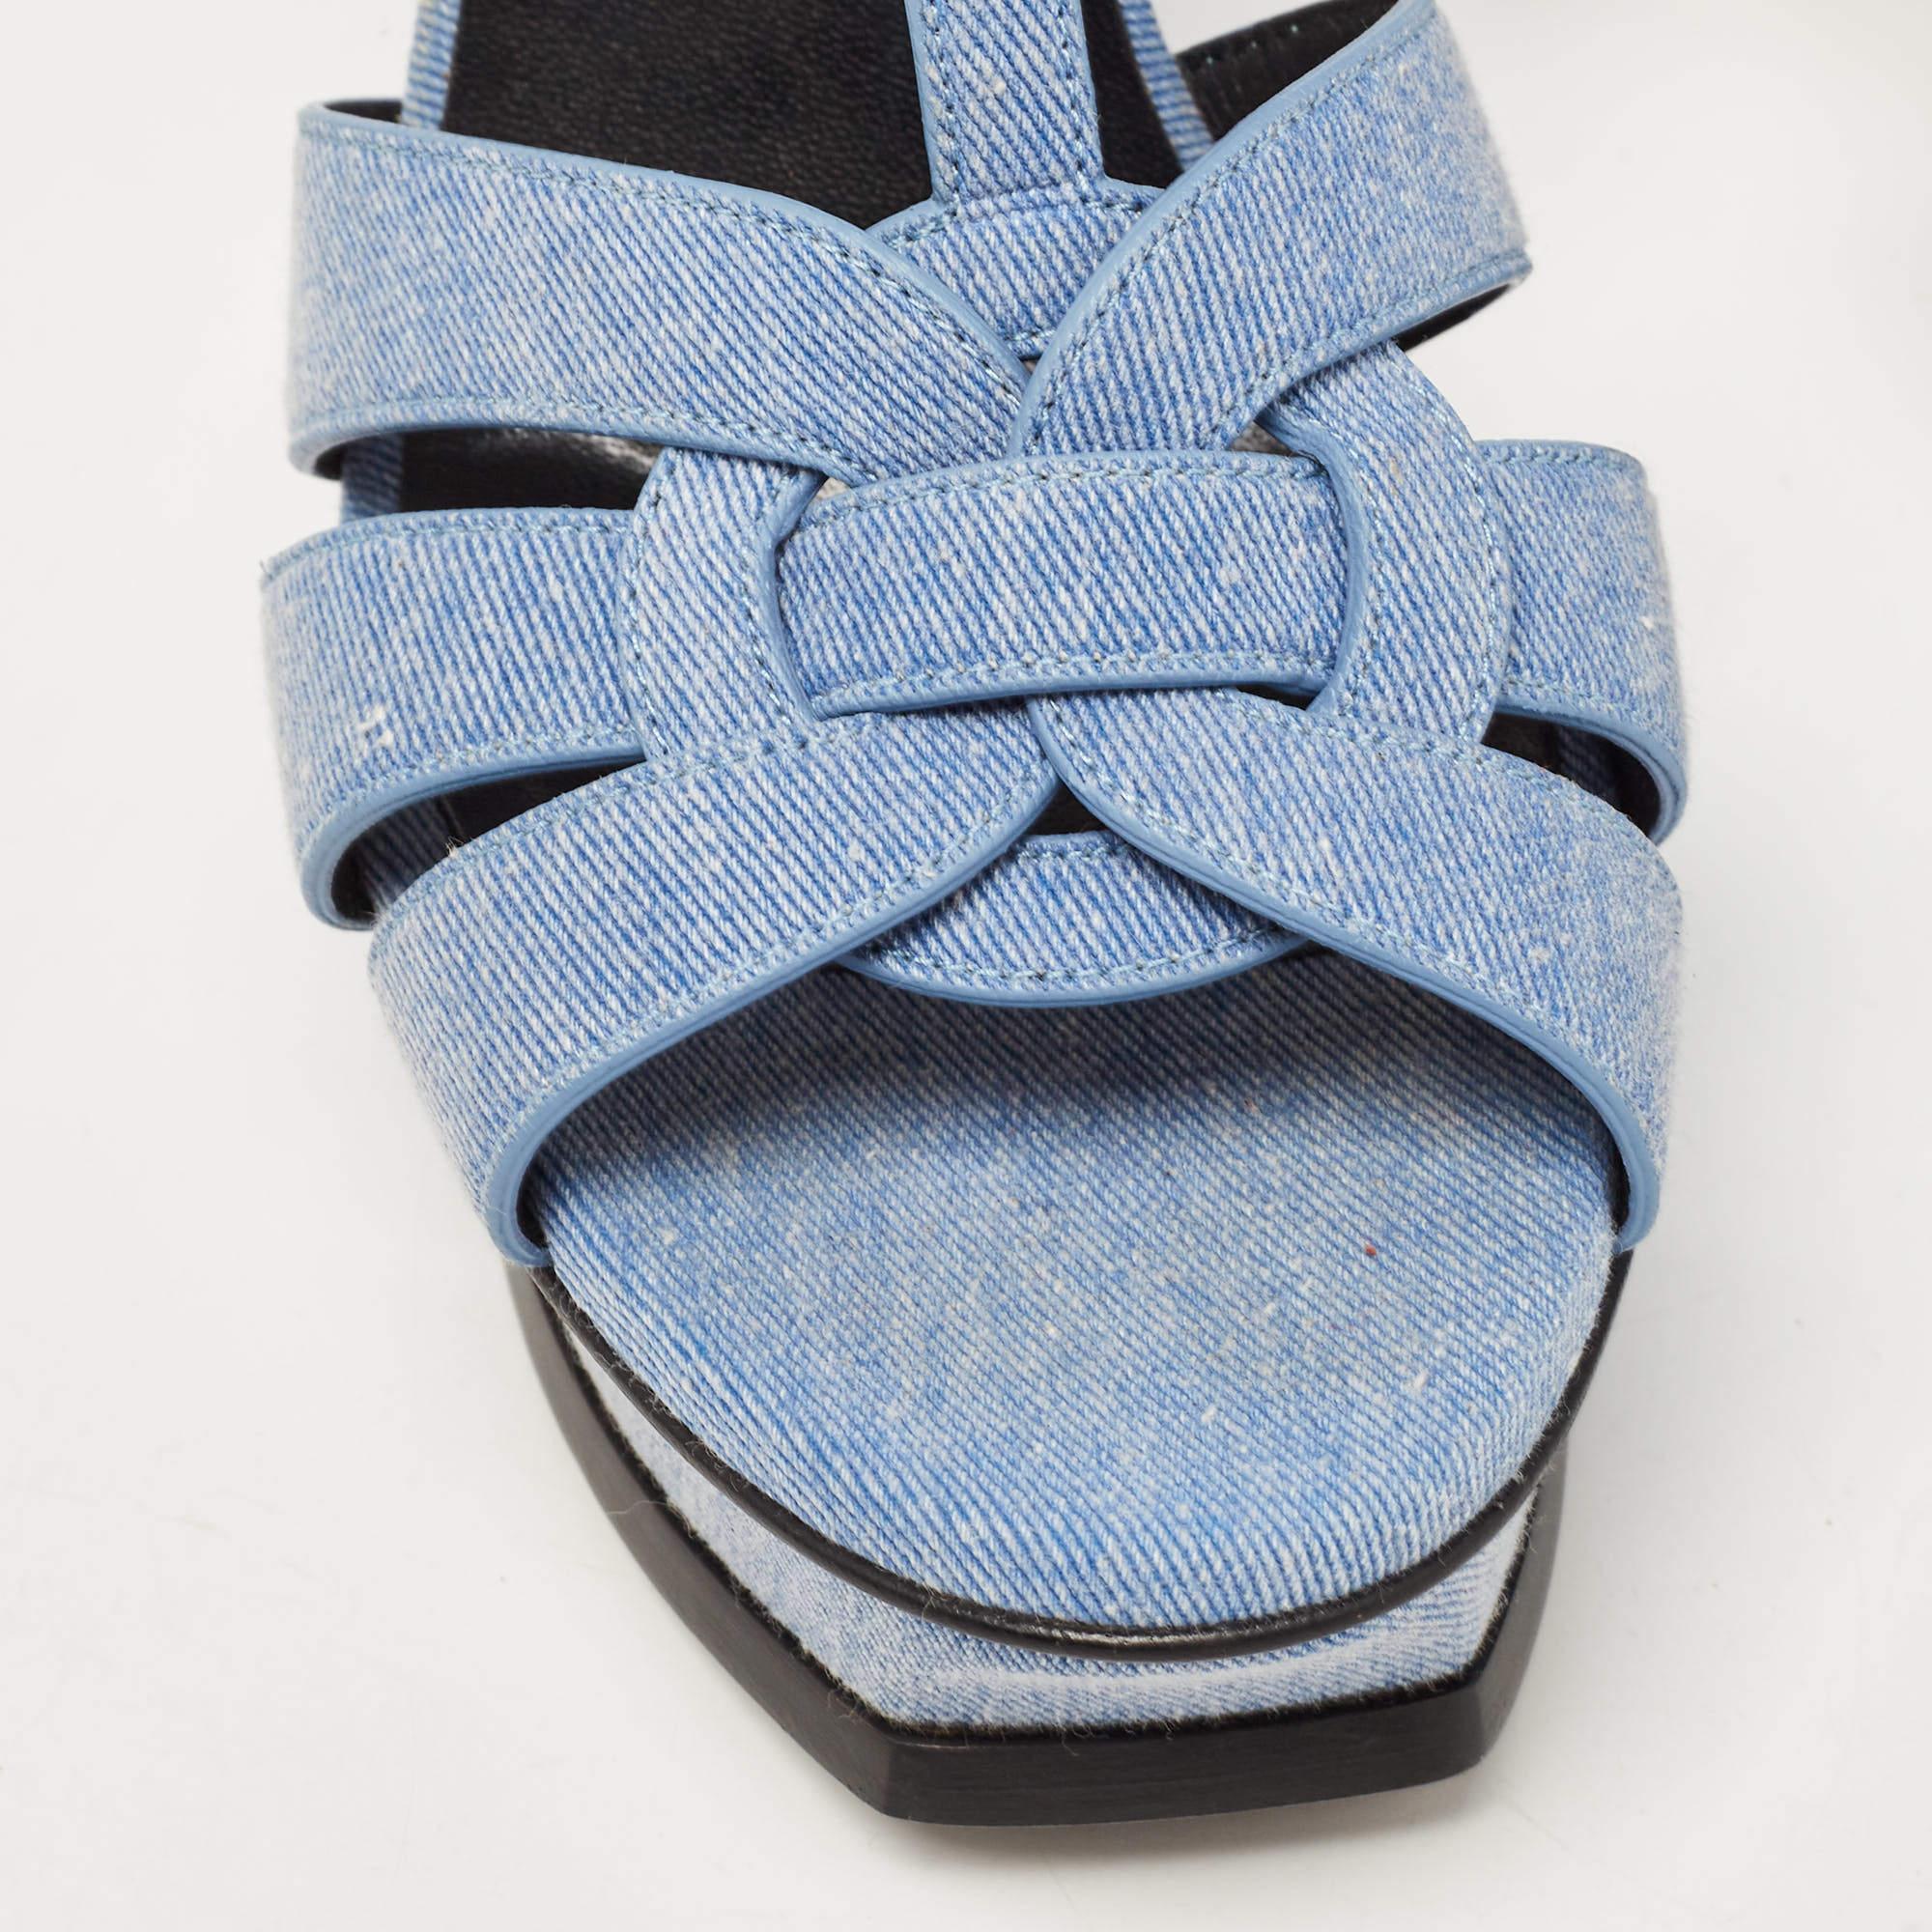 Yves Saint Laurent Blue Denim Tribute Ankle Strap Sandals Size 39 3